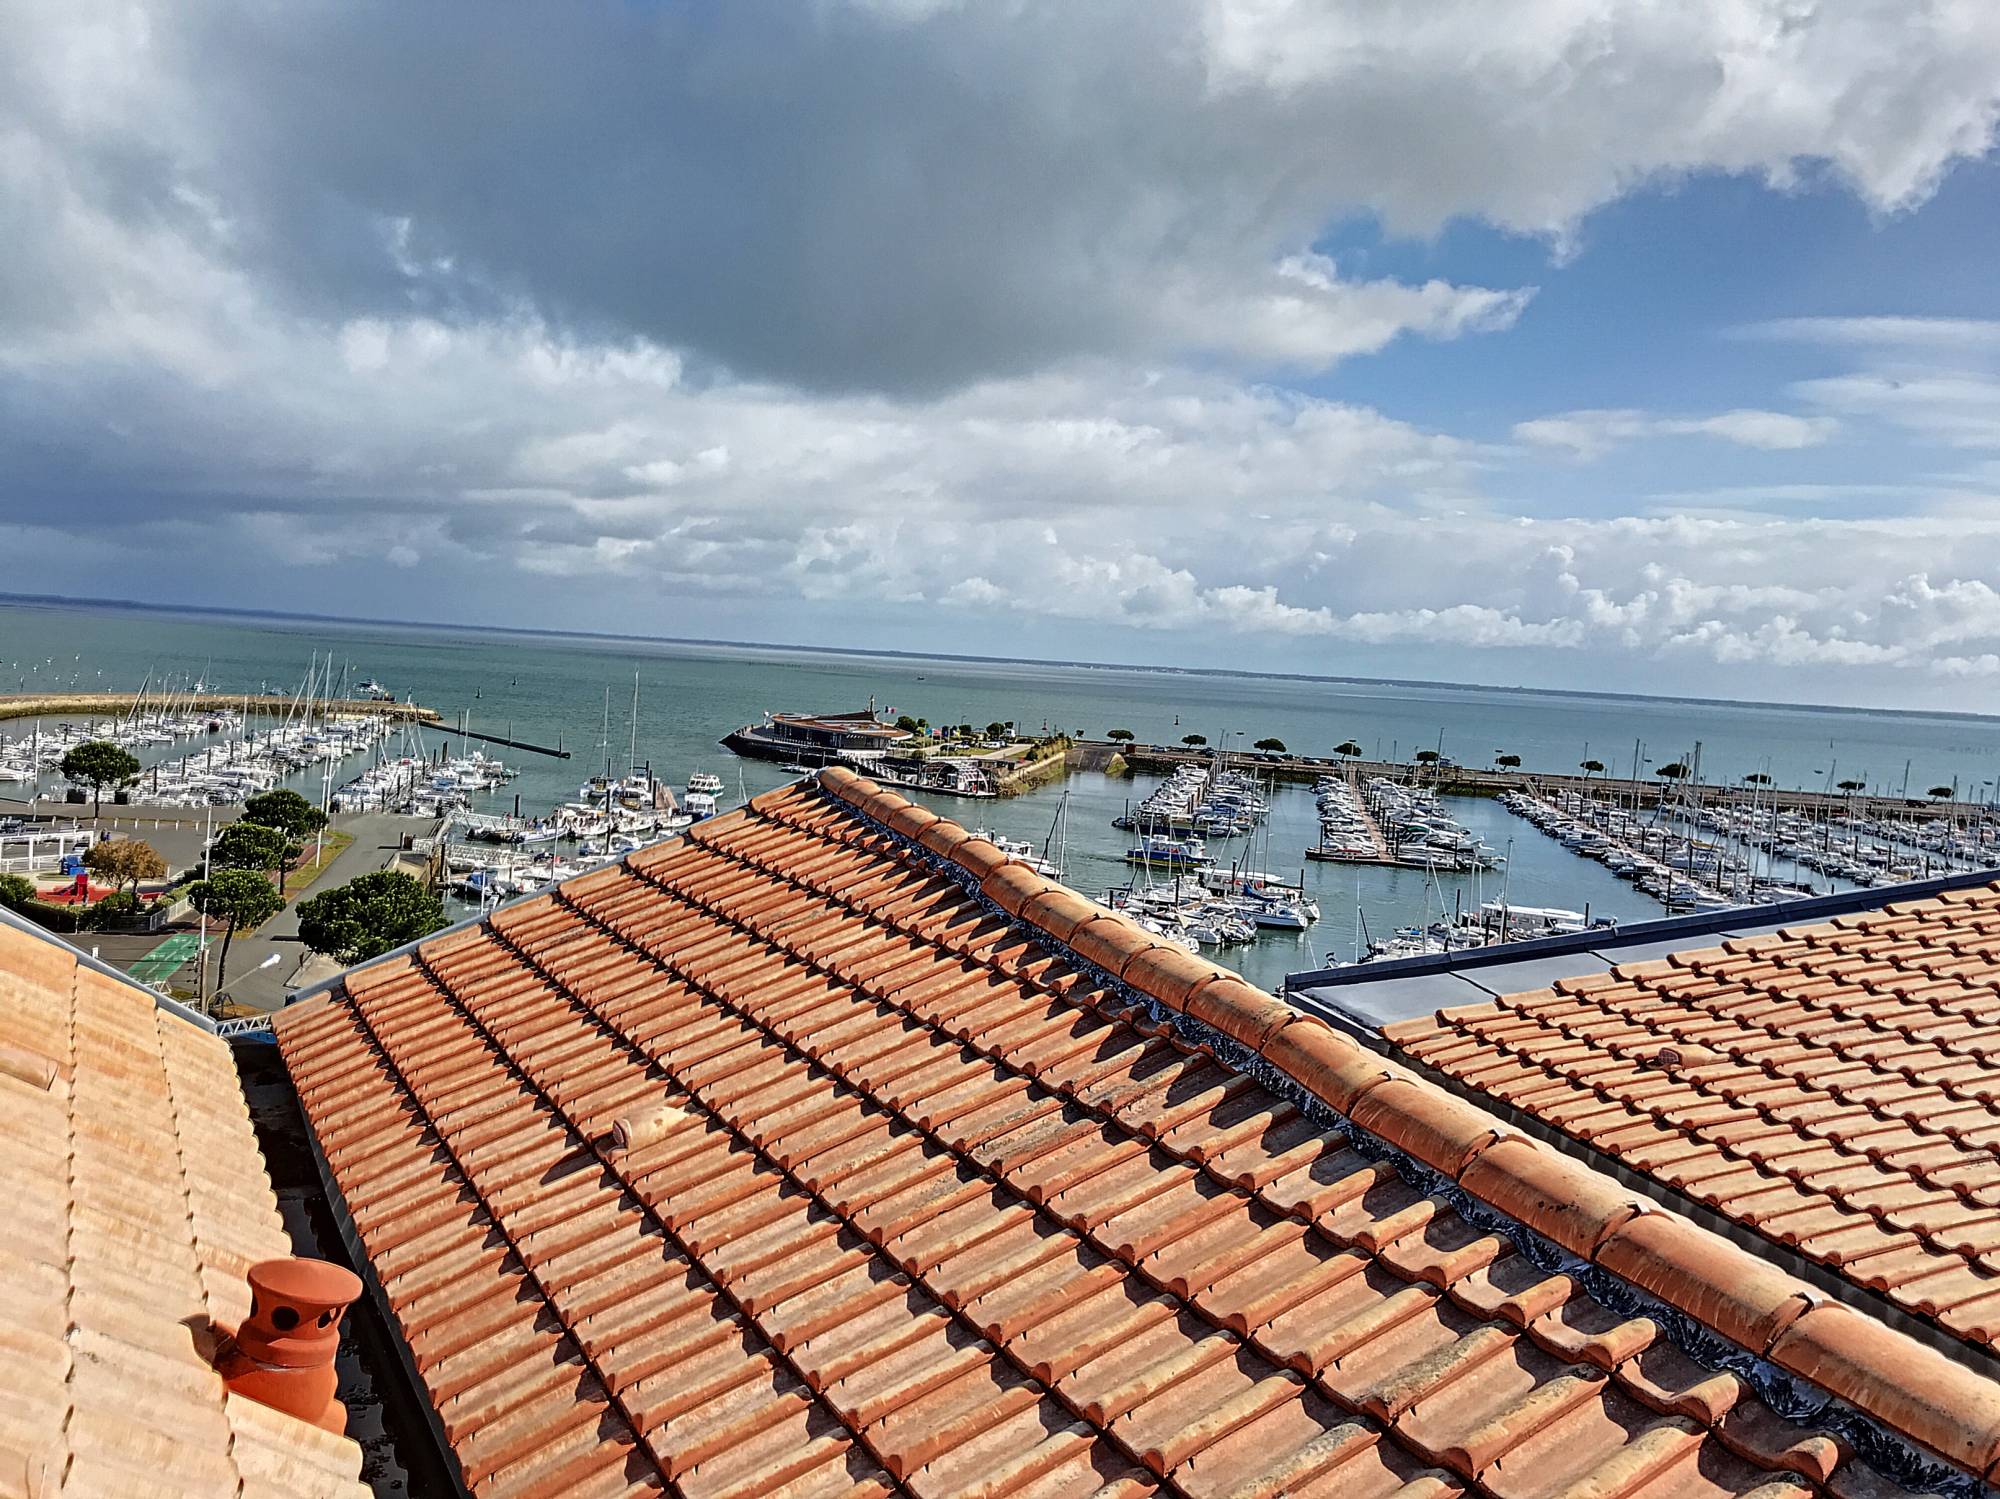 A vendre appartement au dernier étage avec une terrasse panoramique et la vue sur le port d'Arcachon